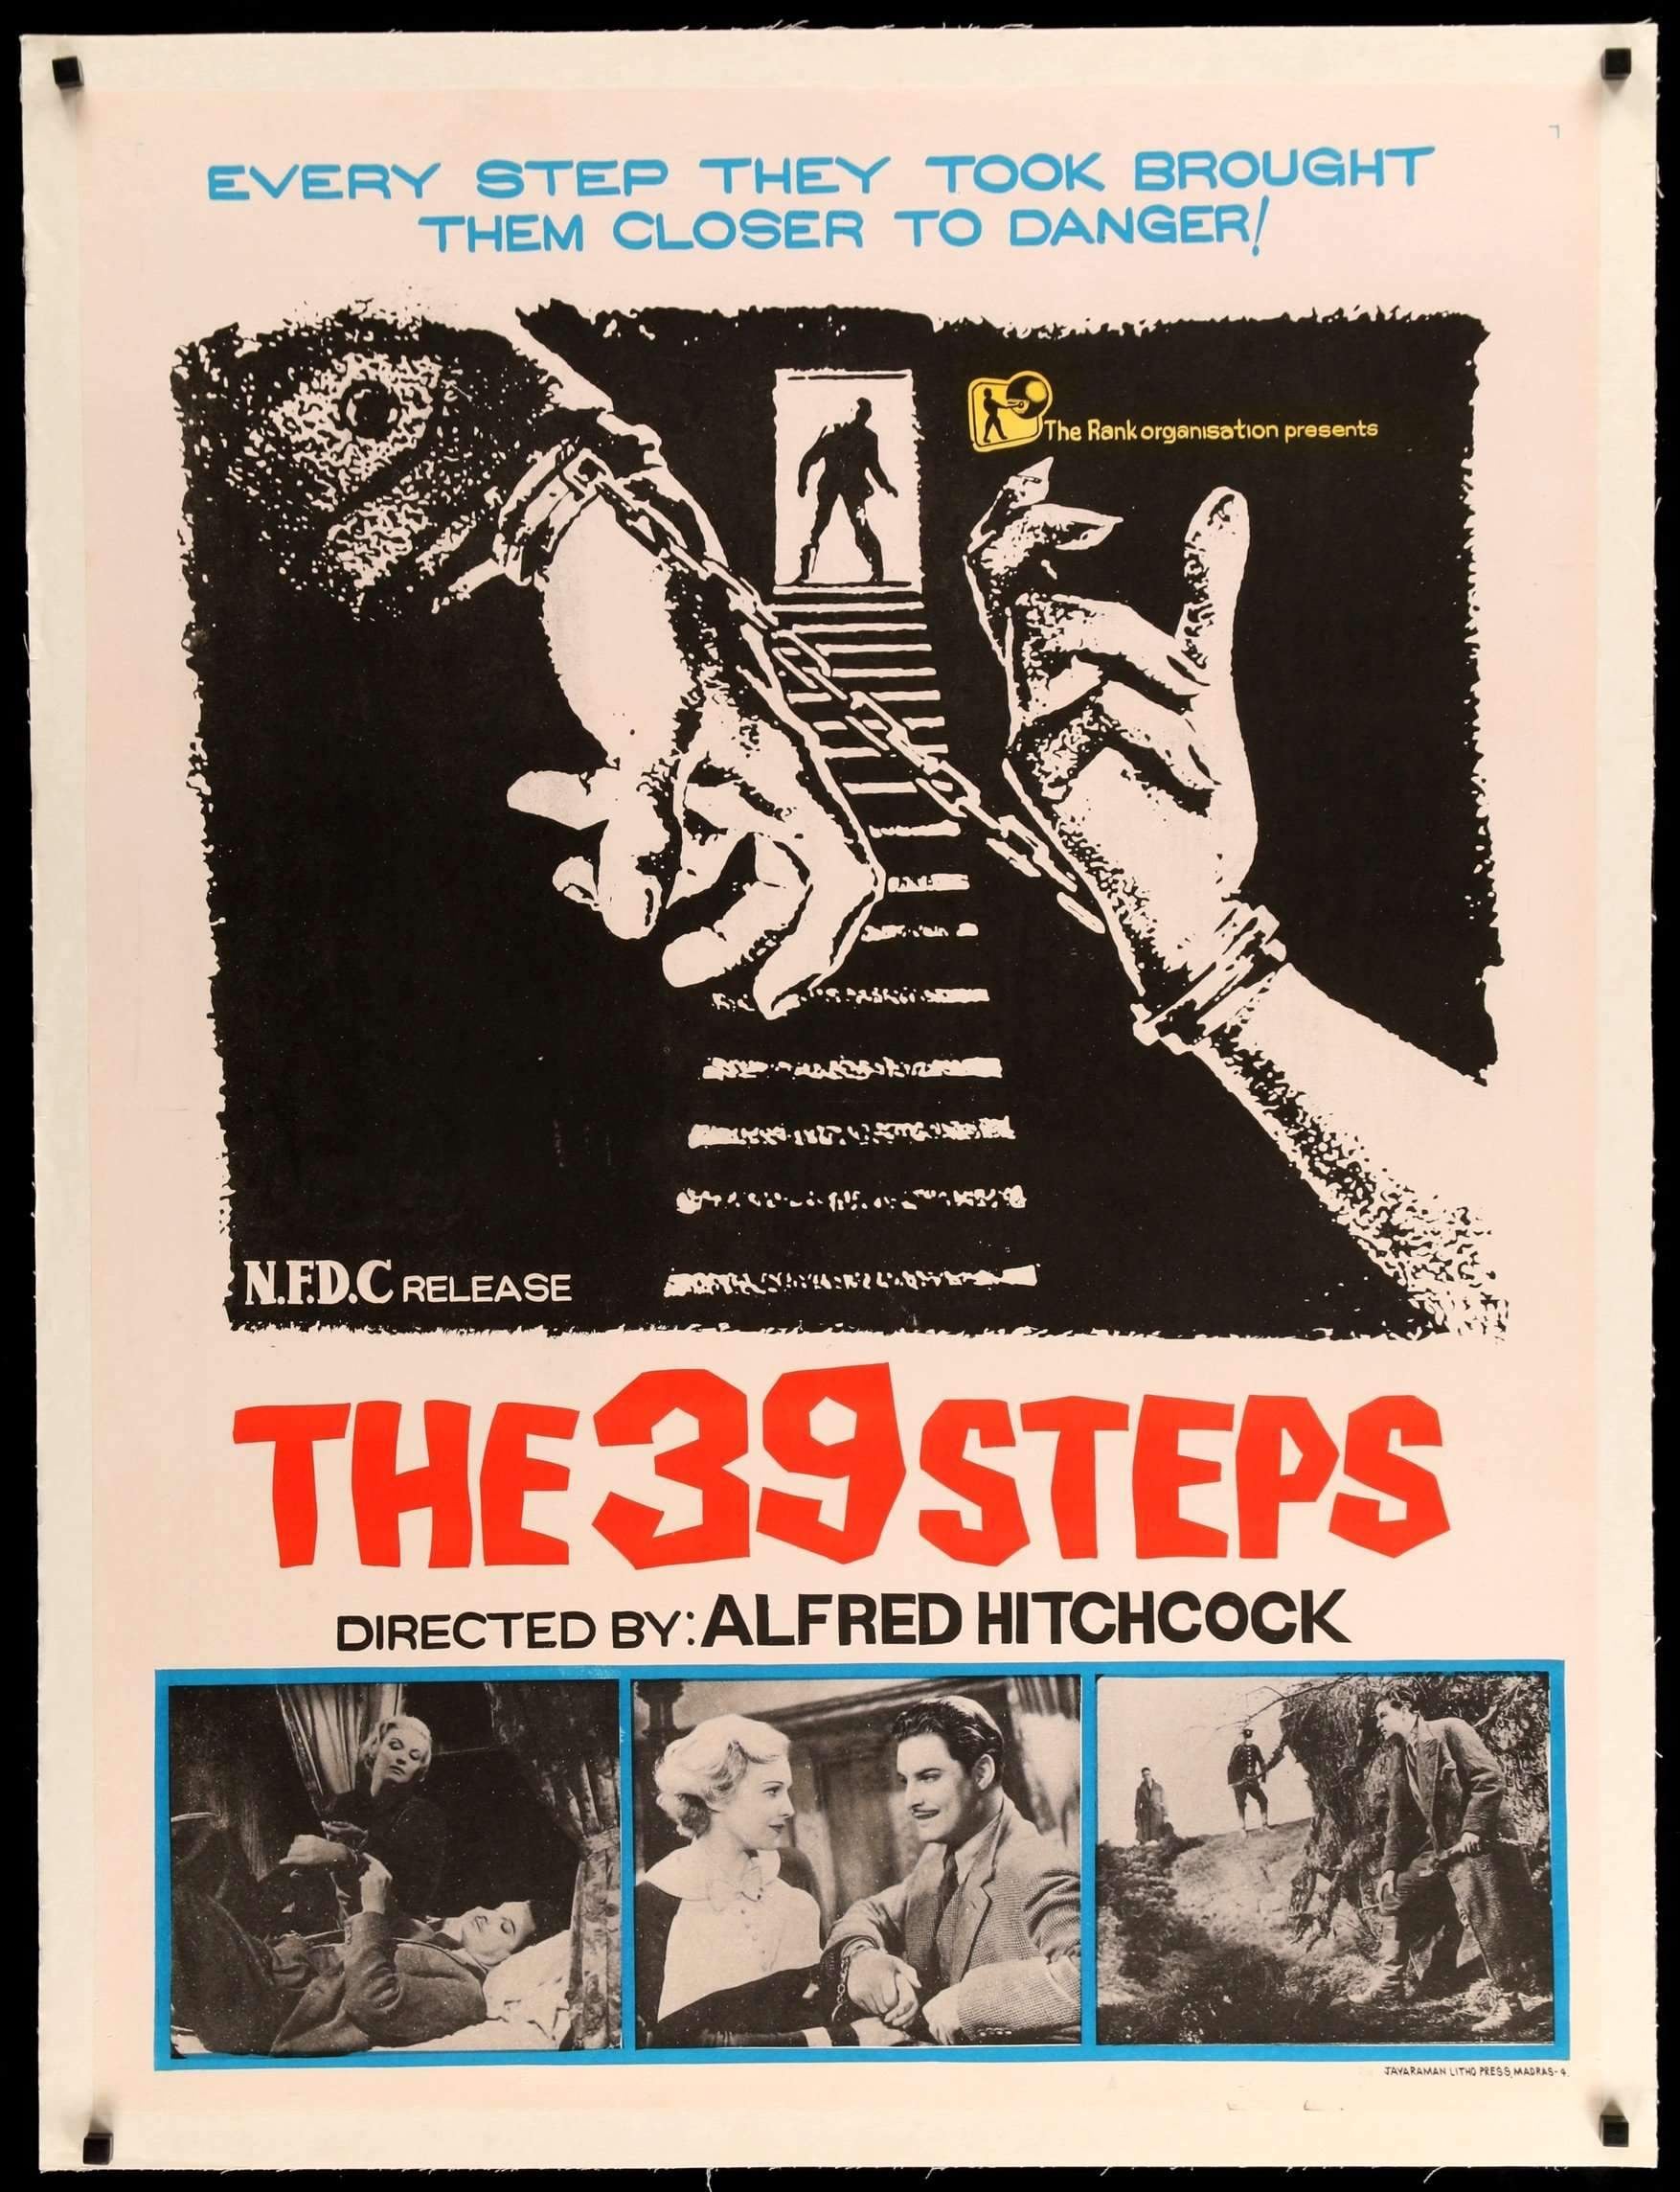 39 Steps (1935) original movie poster for sale at Original Film Art